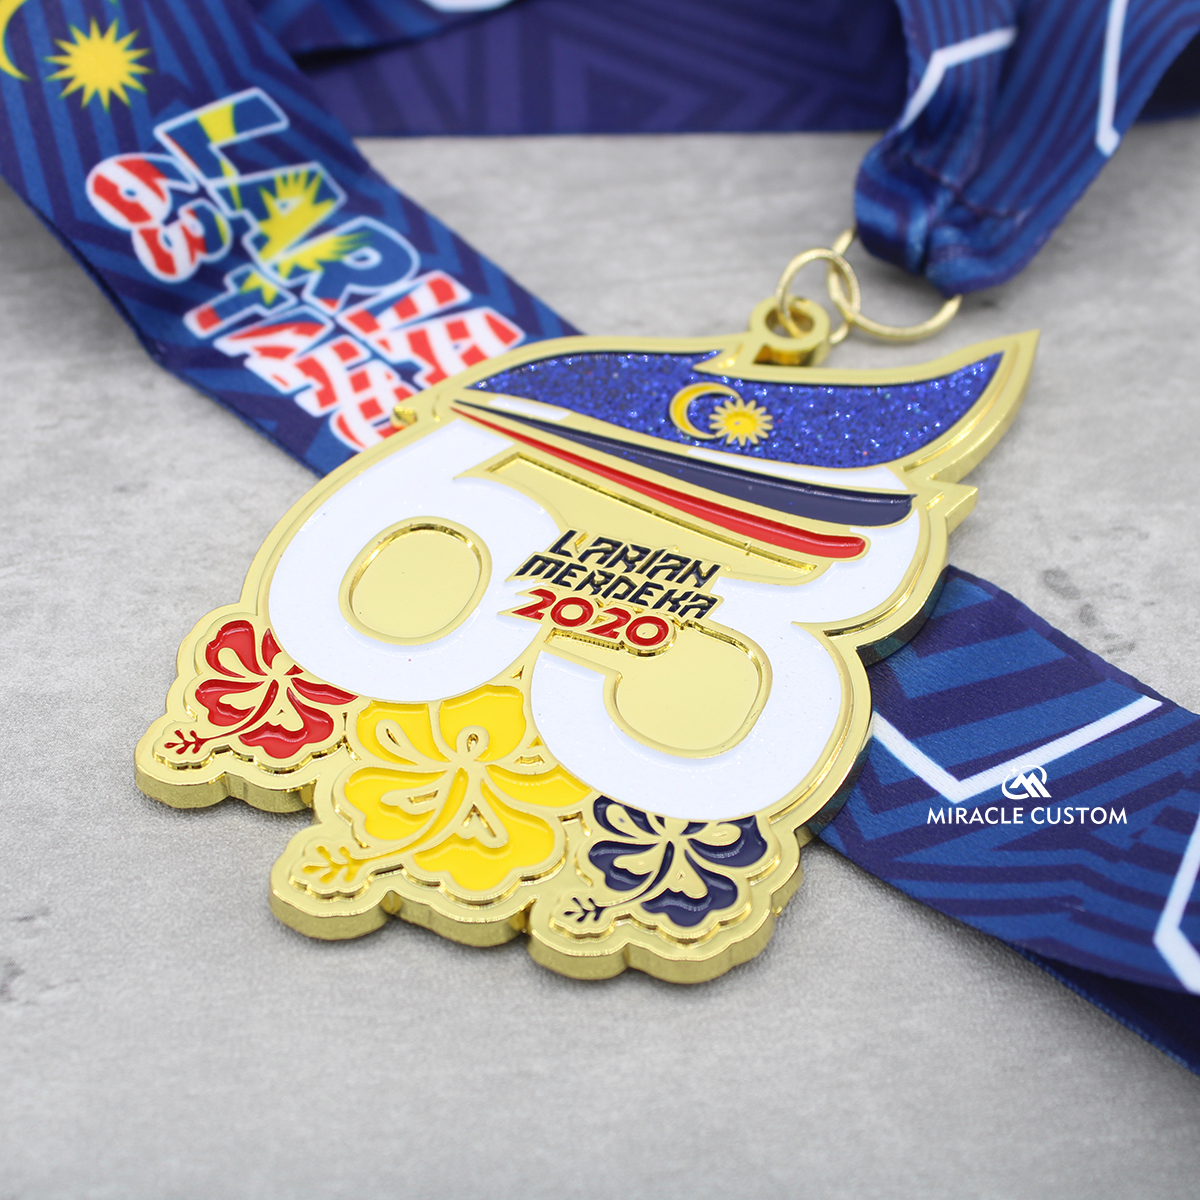 Custom Fun Run Medals Larian Dengkil Merdeka 2020 Sports Medals